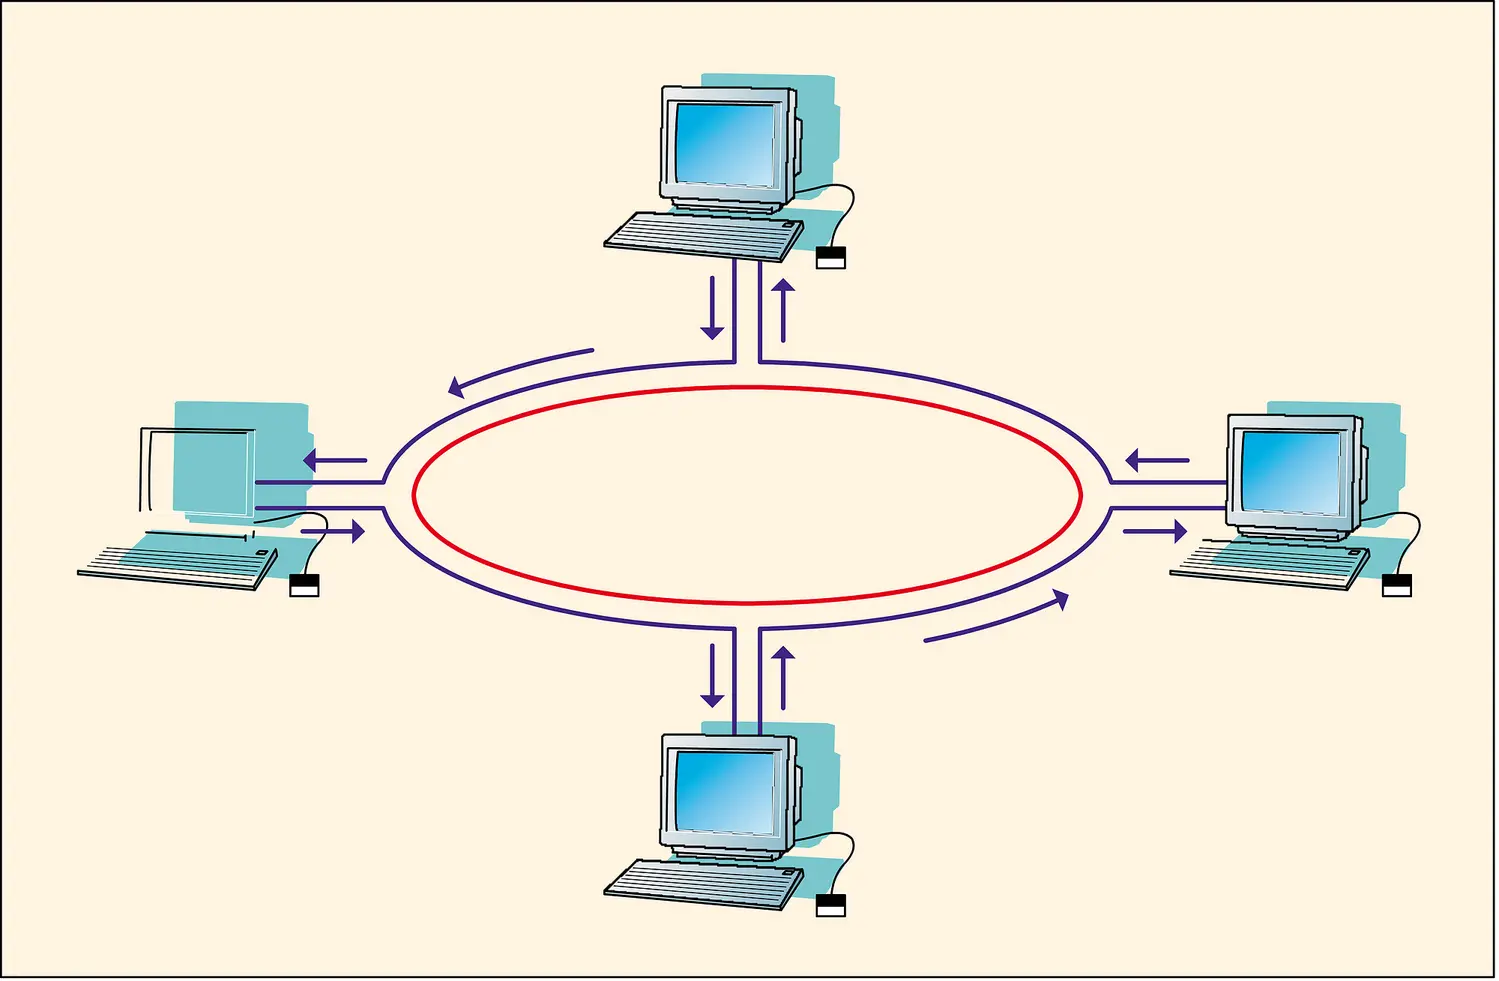 Réseau informatique local de topologie physique en anneau